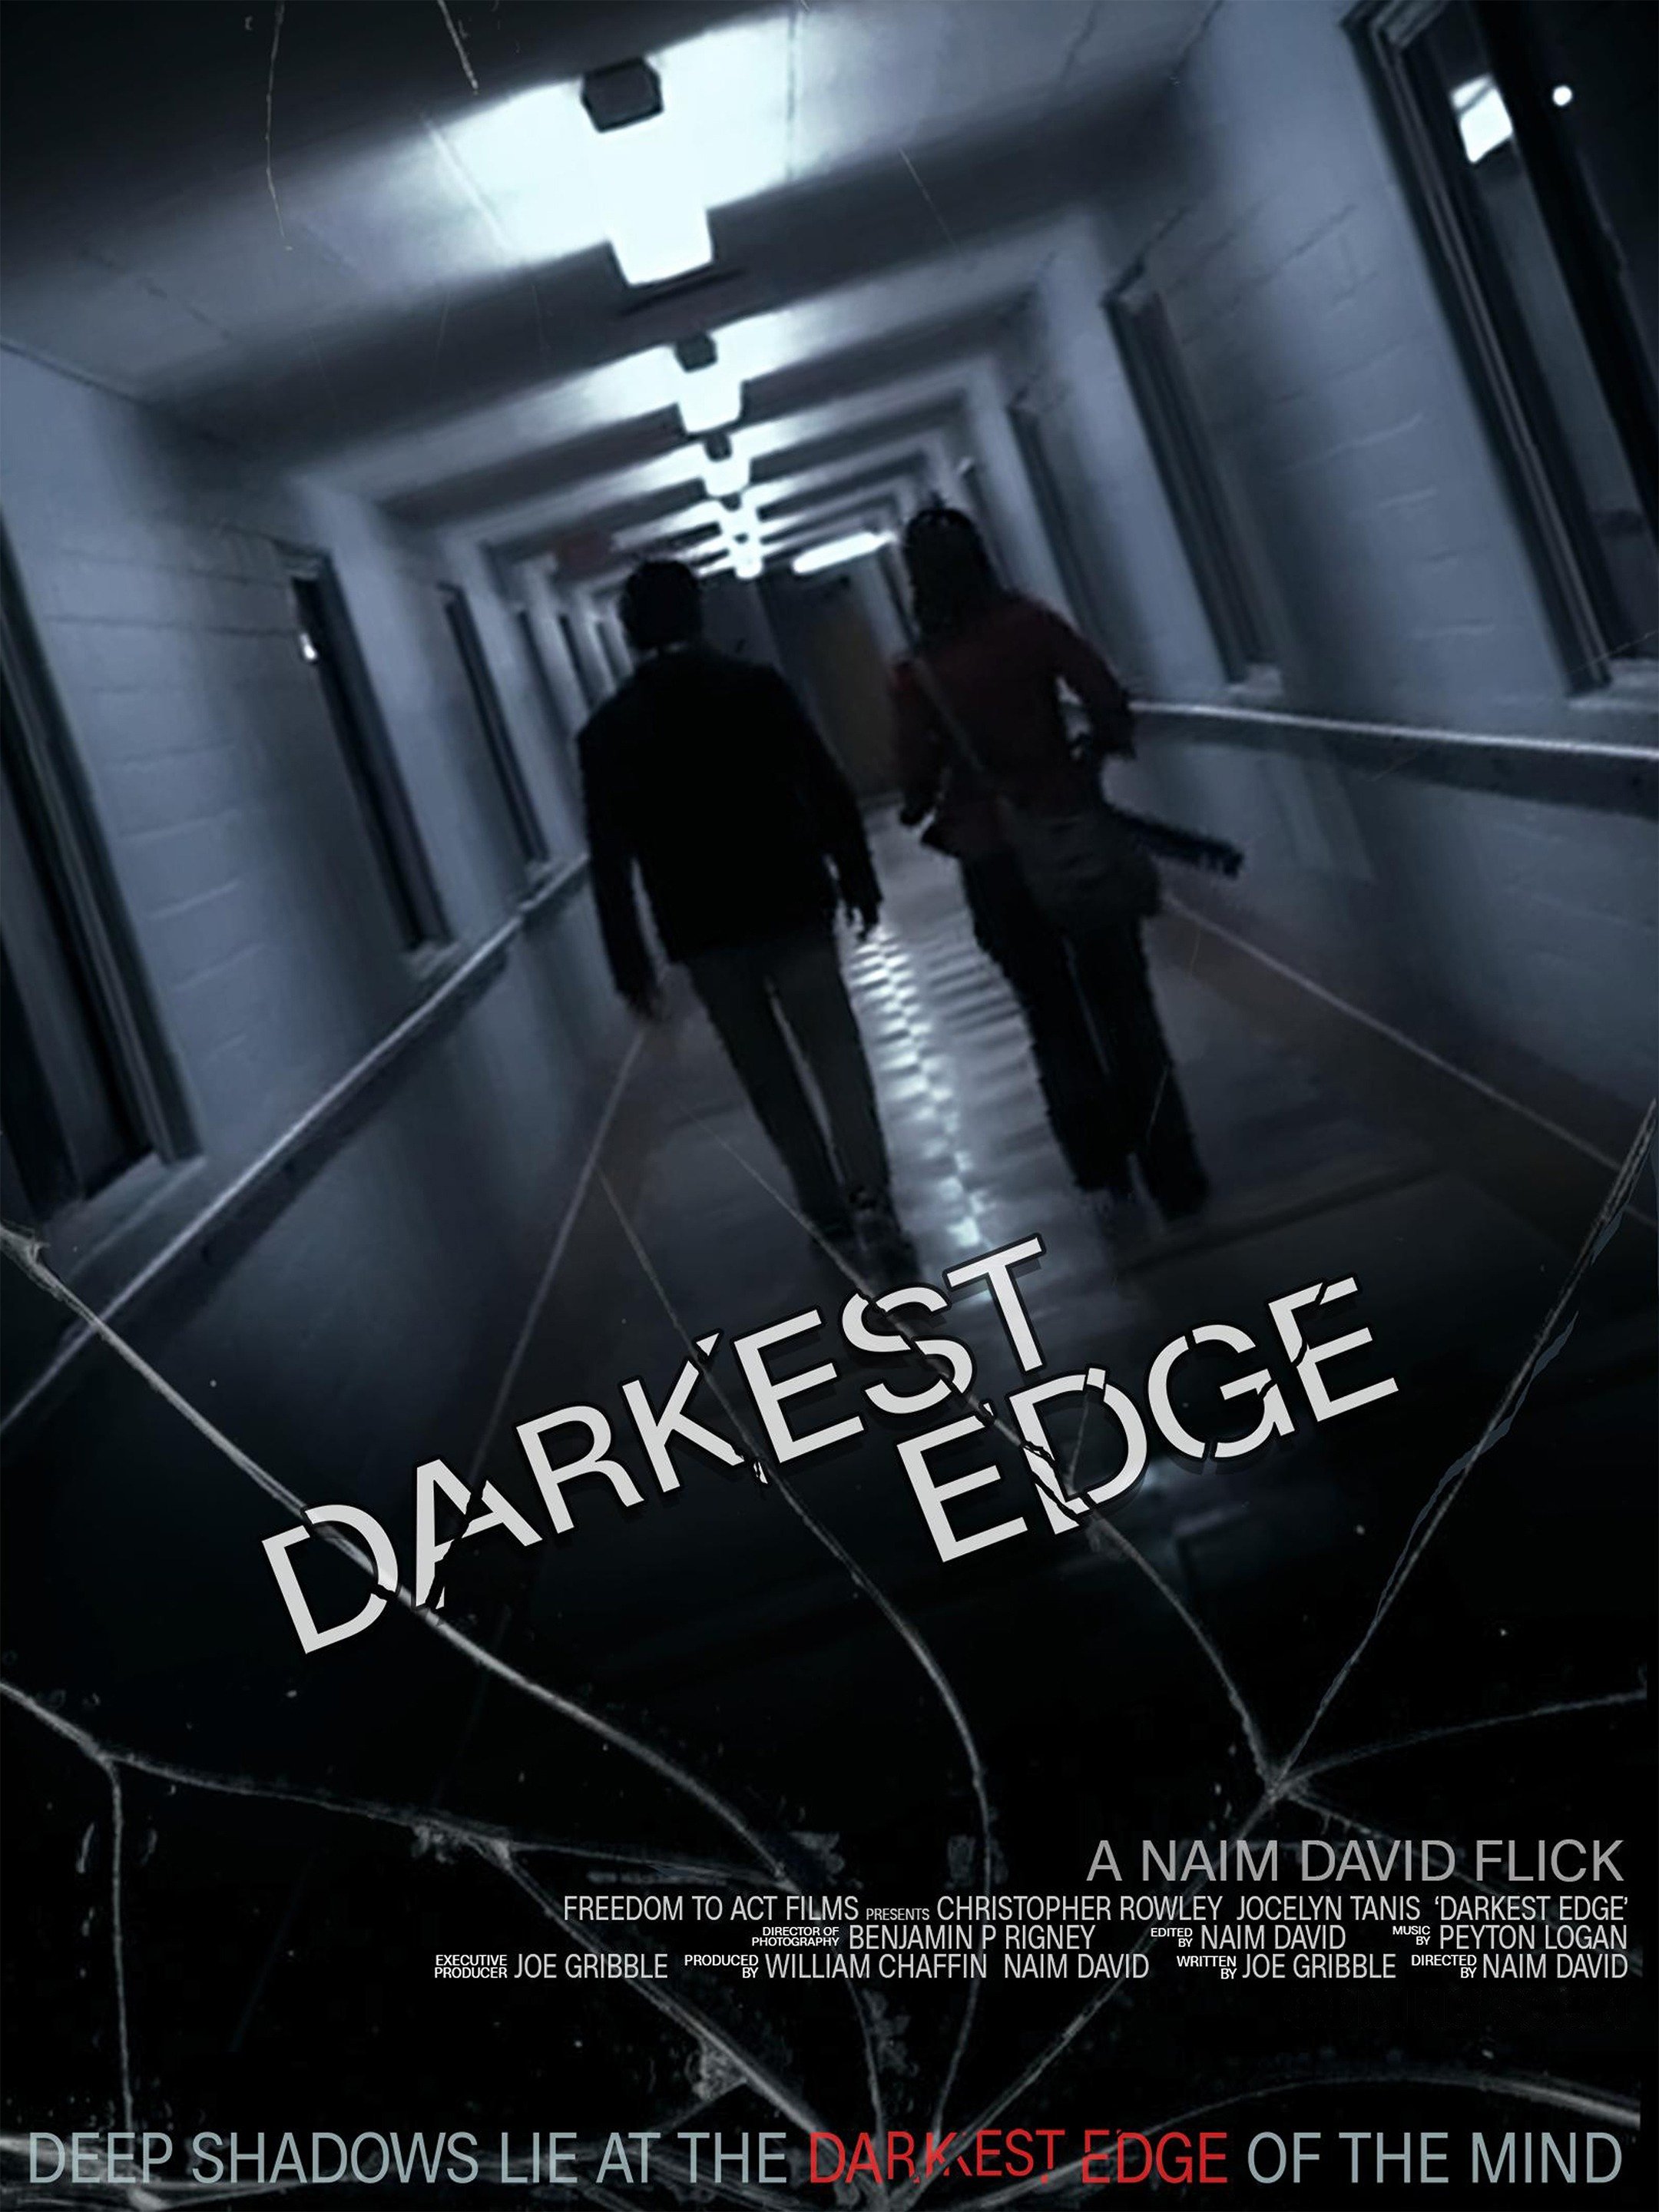 Darkest Edge (2020) photo 1